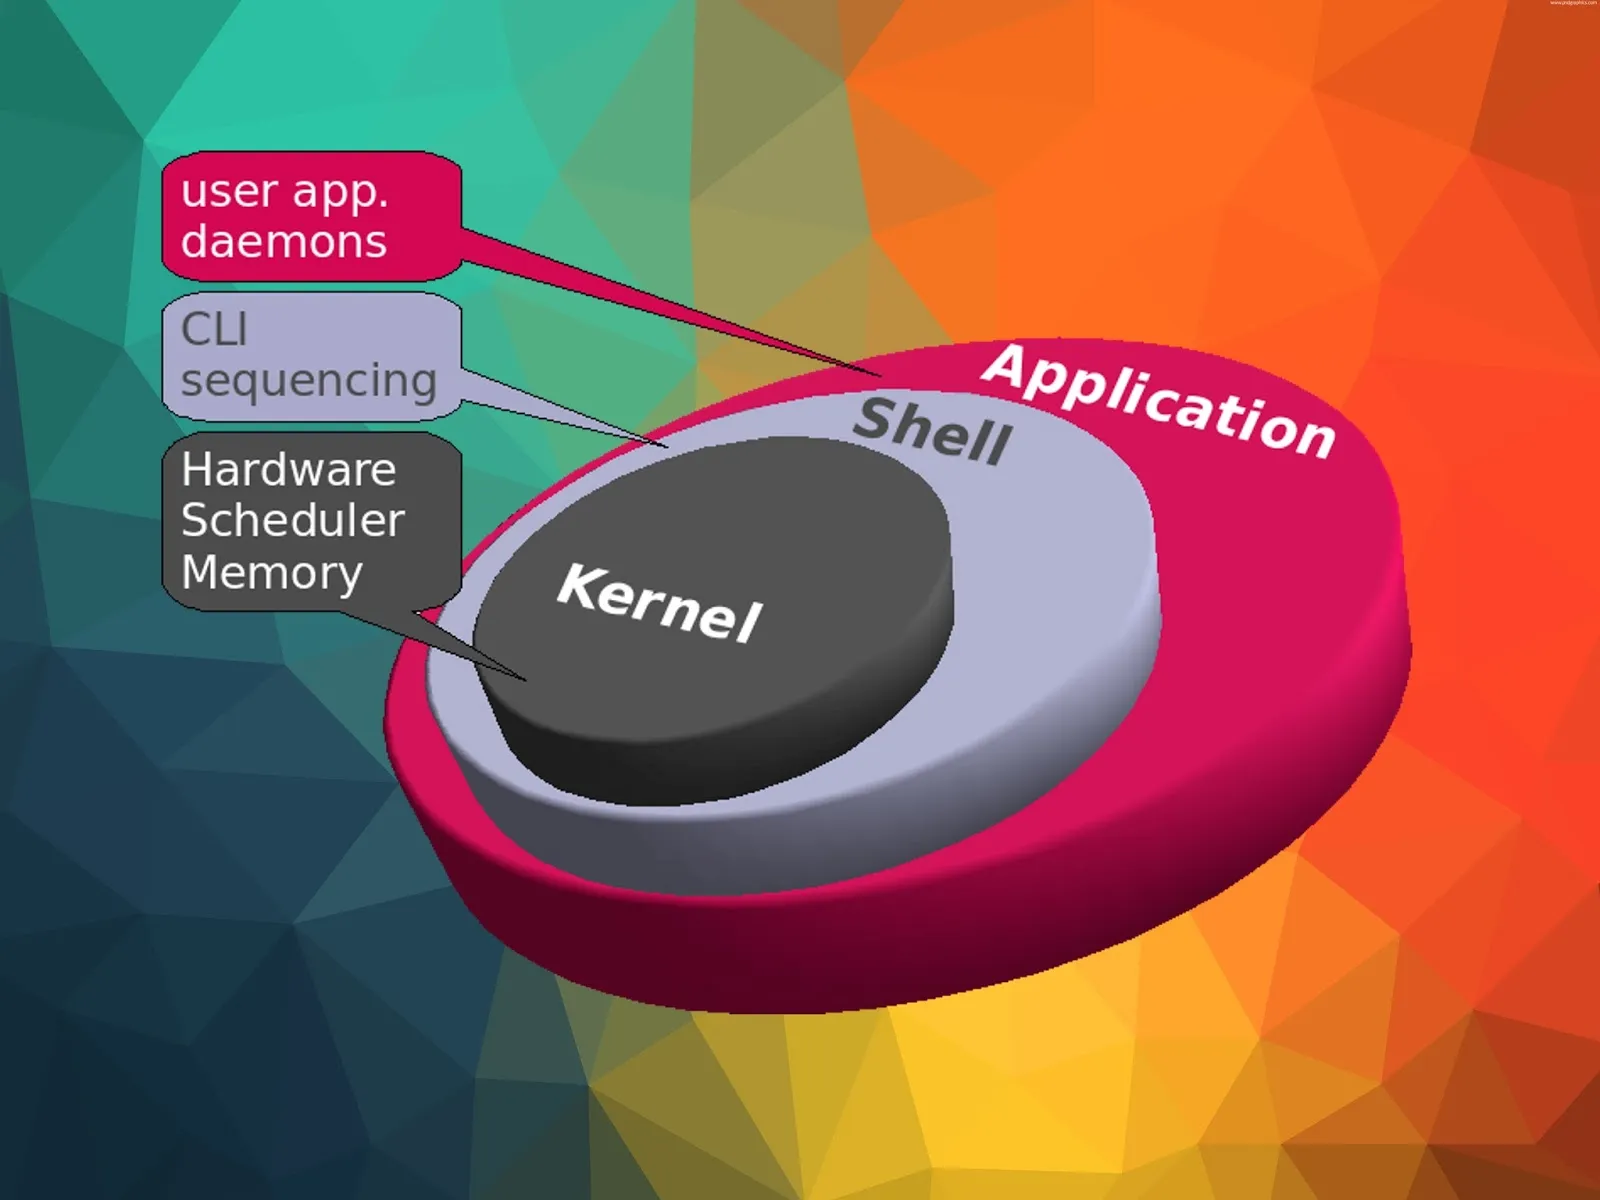 Shell hoạt động như một giao diện giữa người dùng và Kernel